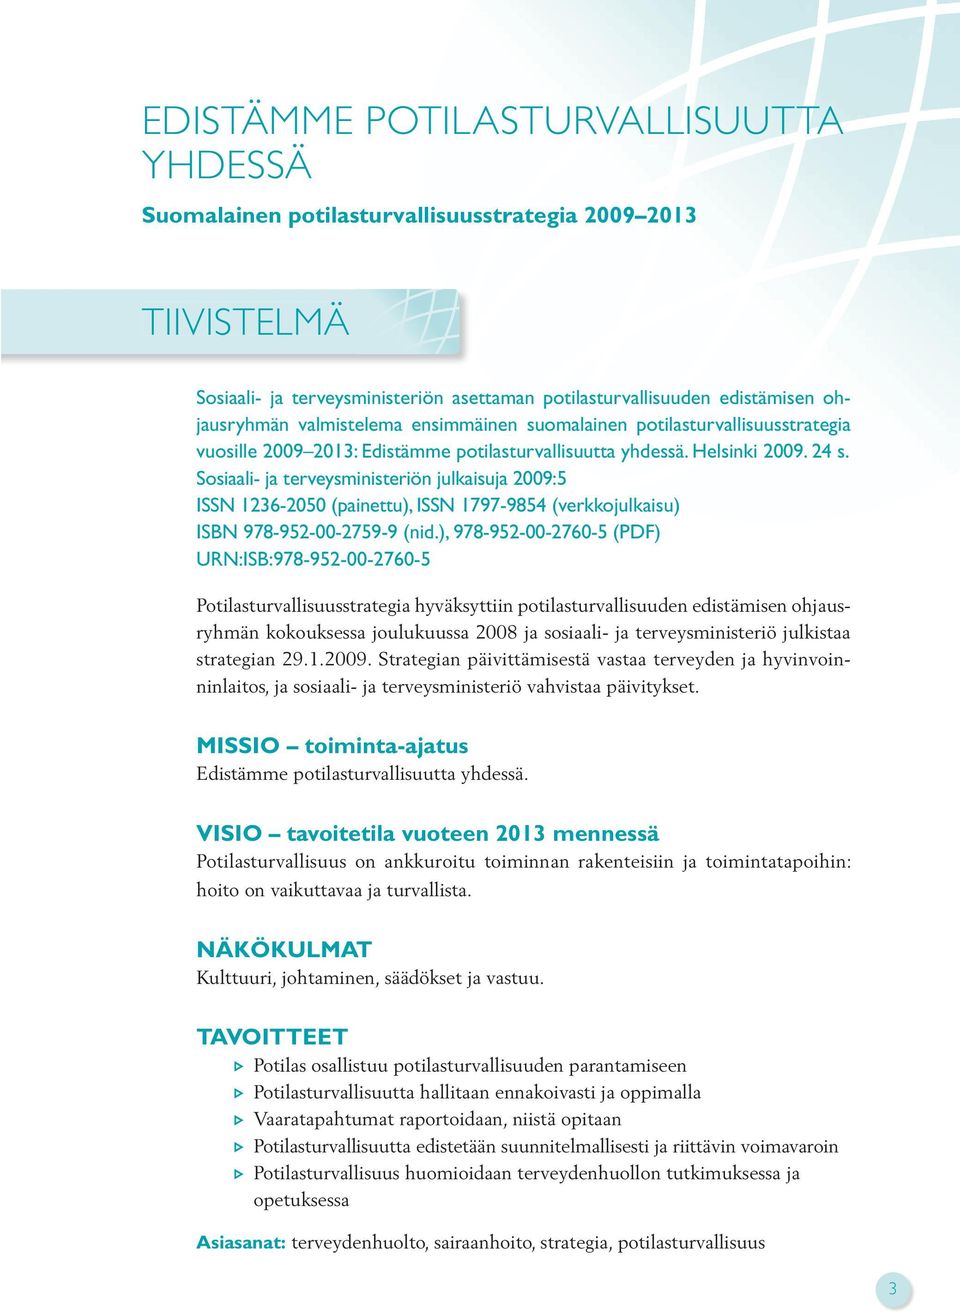 Sosiaali- ja terveysministeriön julkaisuja 2009:5 ISSN 1236-2050 (painettu), ISSN 1797-9854 (verkkojulkaisu) ISBN 978-952-00-2759-9 (nid.